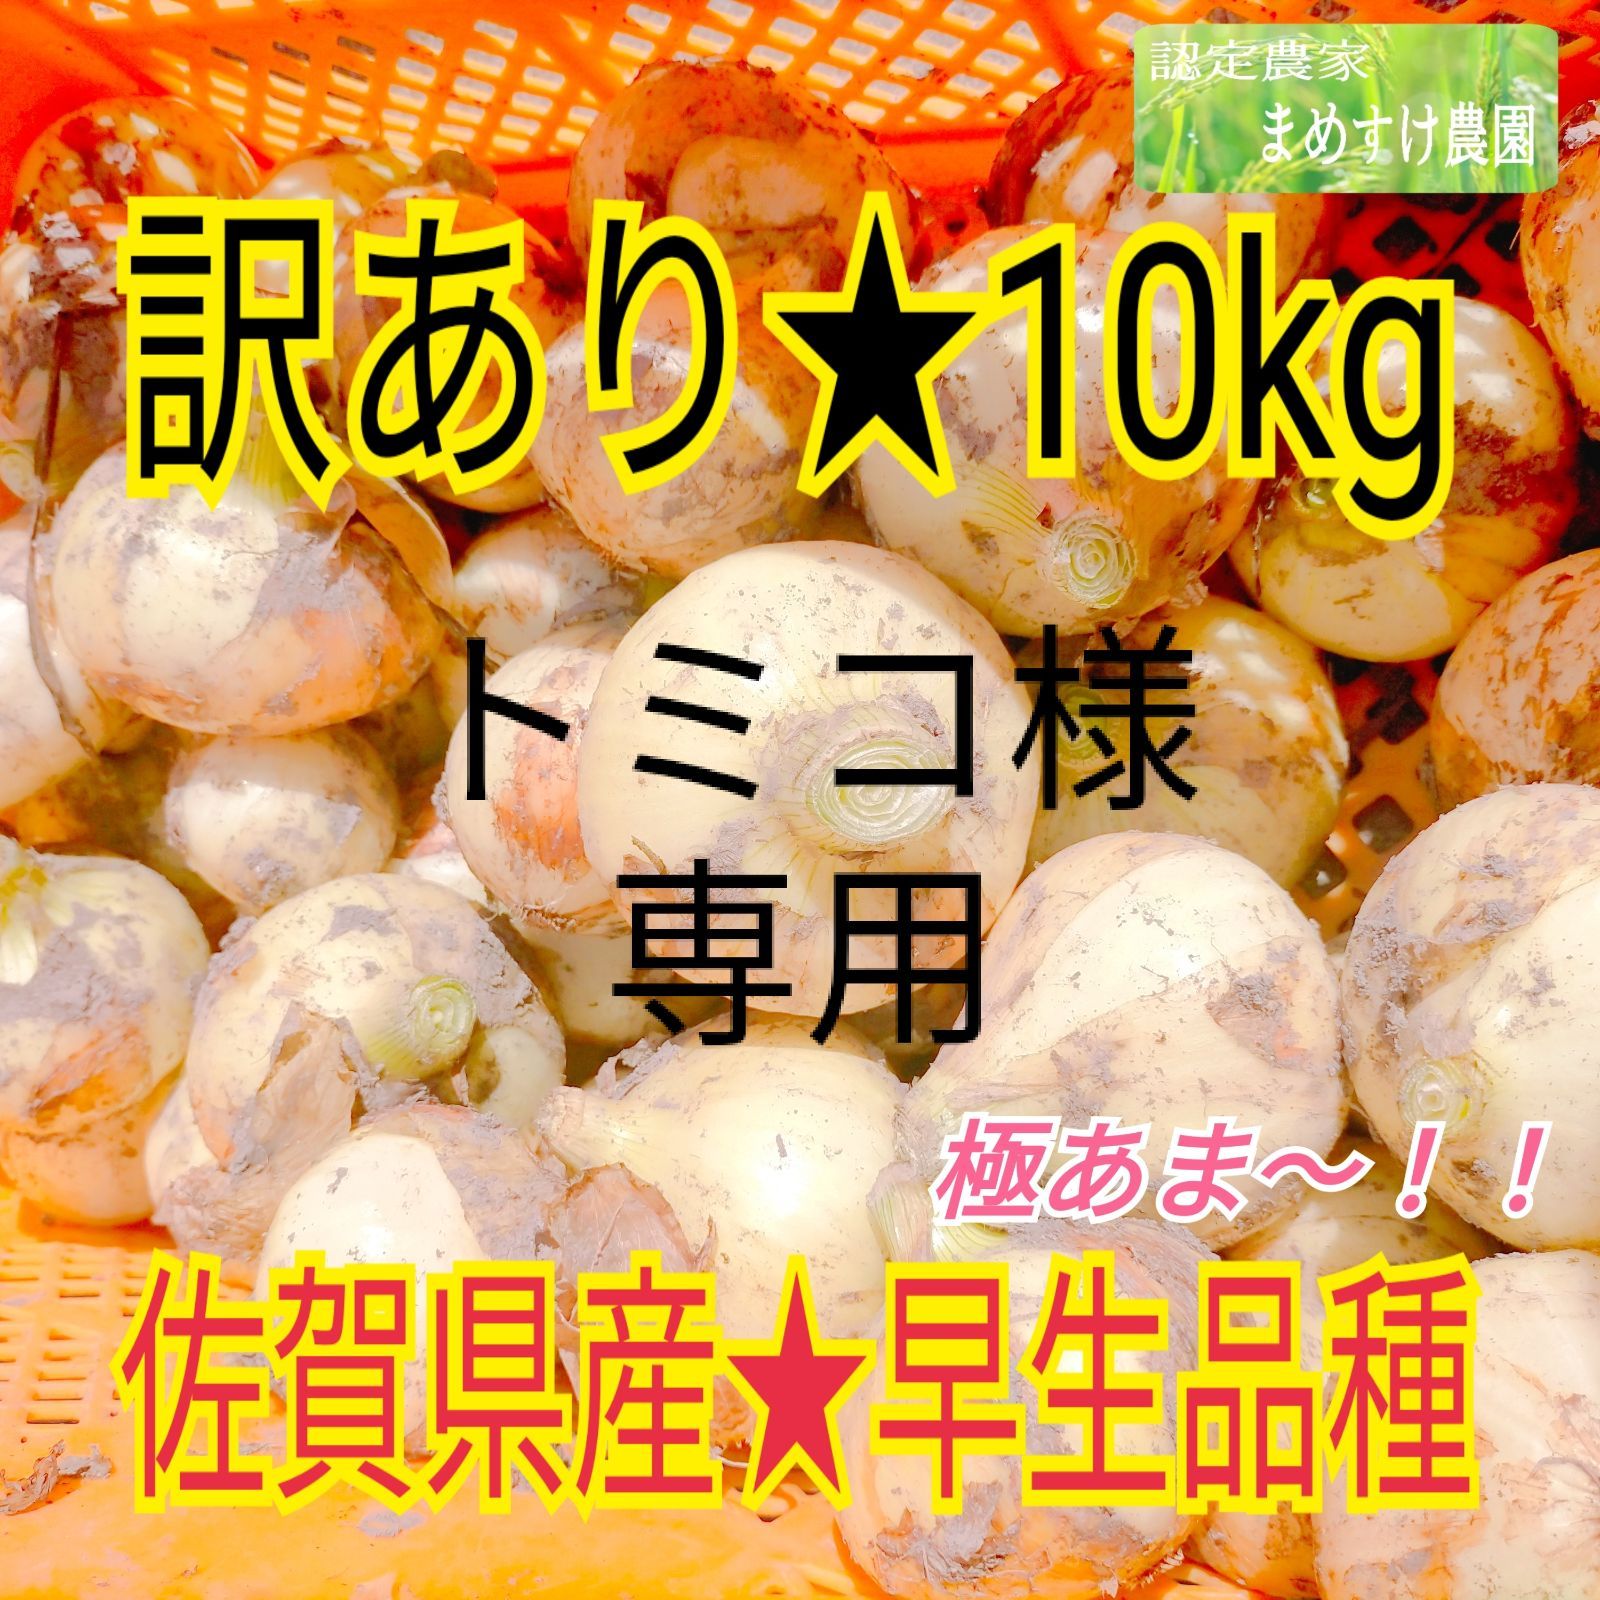 トミコ様専用 佐賀県産 極甘 新 玉ねぎ 早生品種 訳あり 10kg - 豆すけ